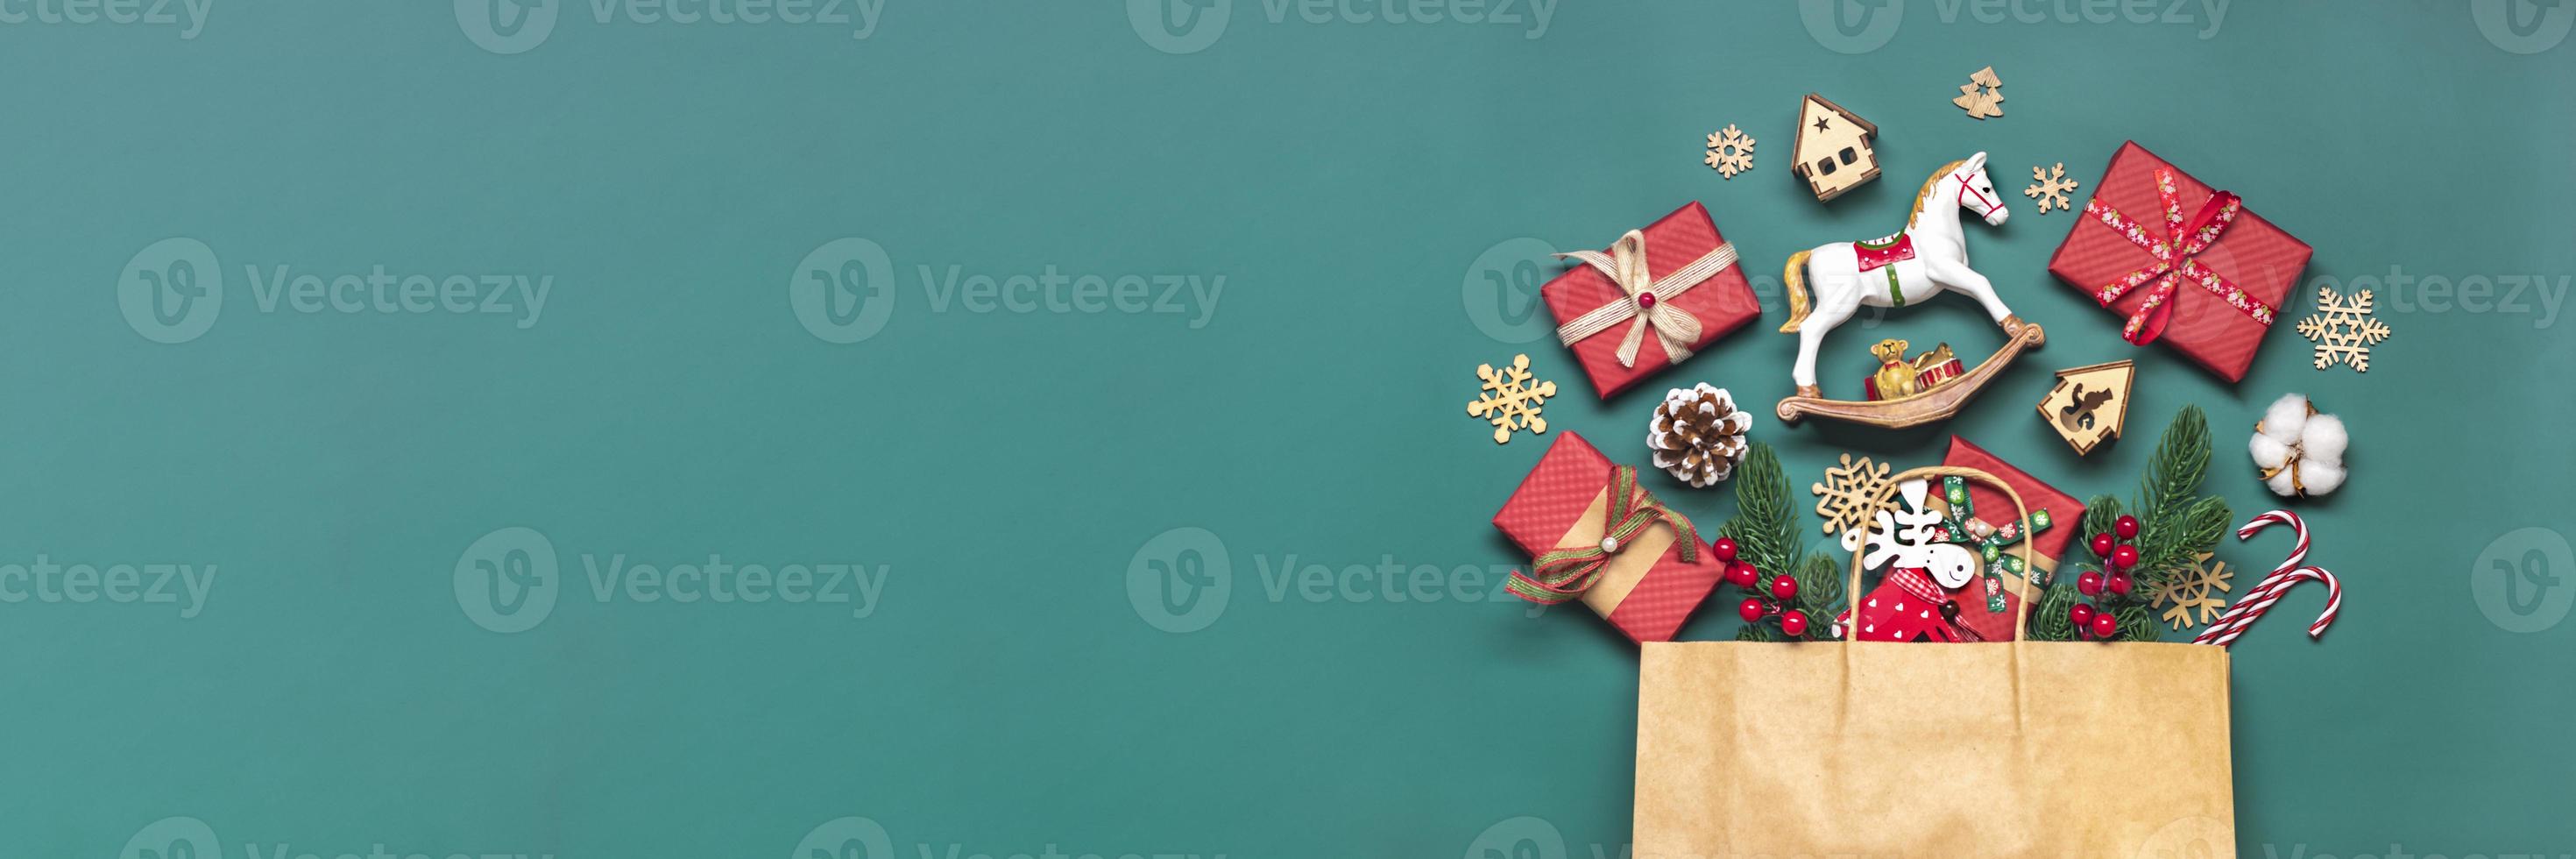 caixas de presente vermelhas embrulhadas à mão decoradas com fitas, flocos de neve e números, decorações de natal e decoração em saco na mesa verde conceito de calendário do advento de natal vista superior cartão de férias plano leigo foto